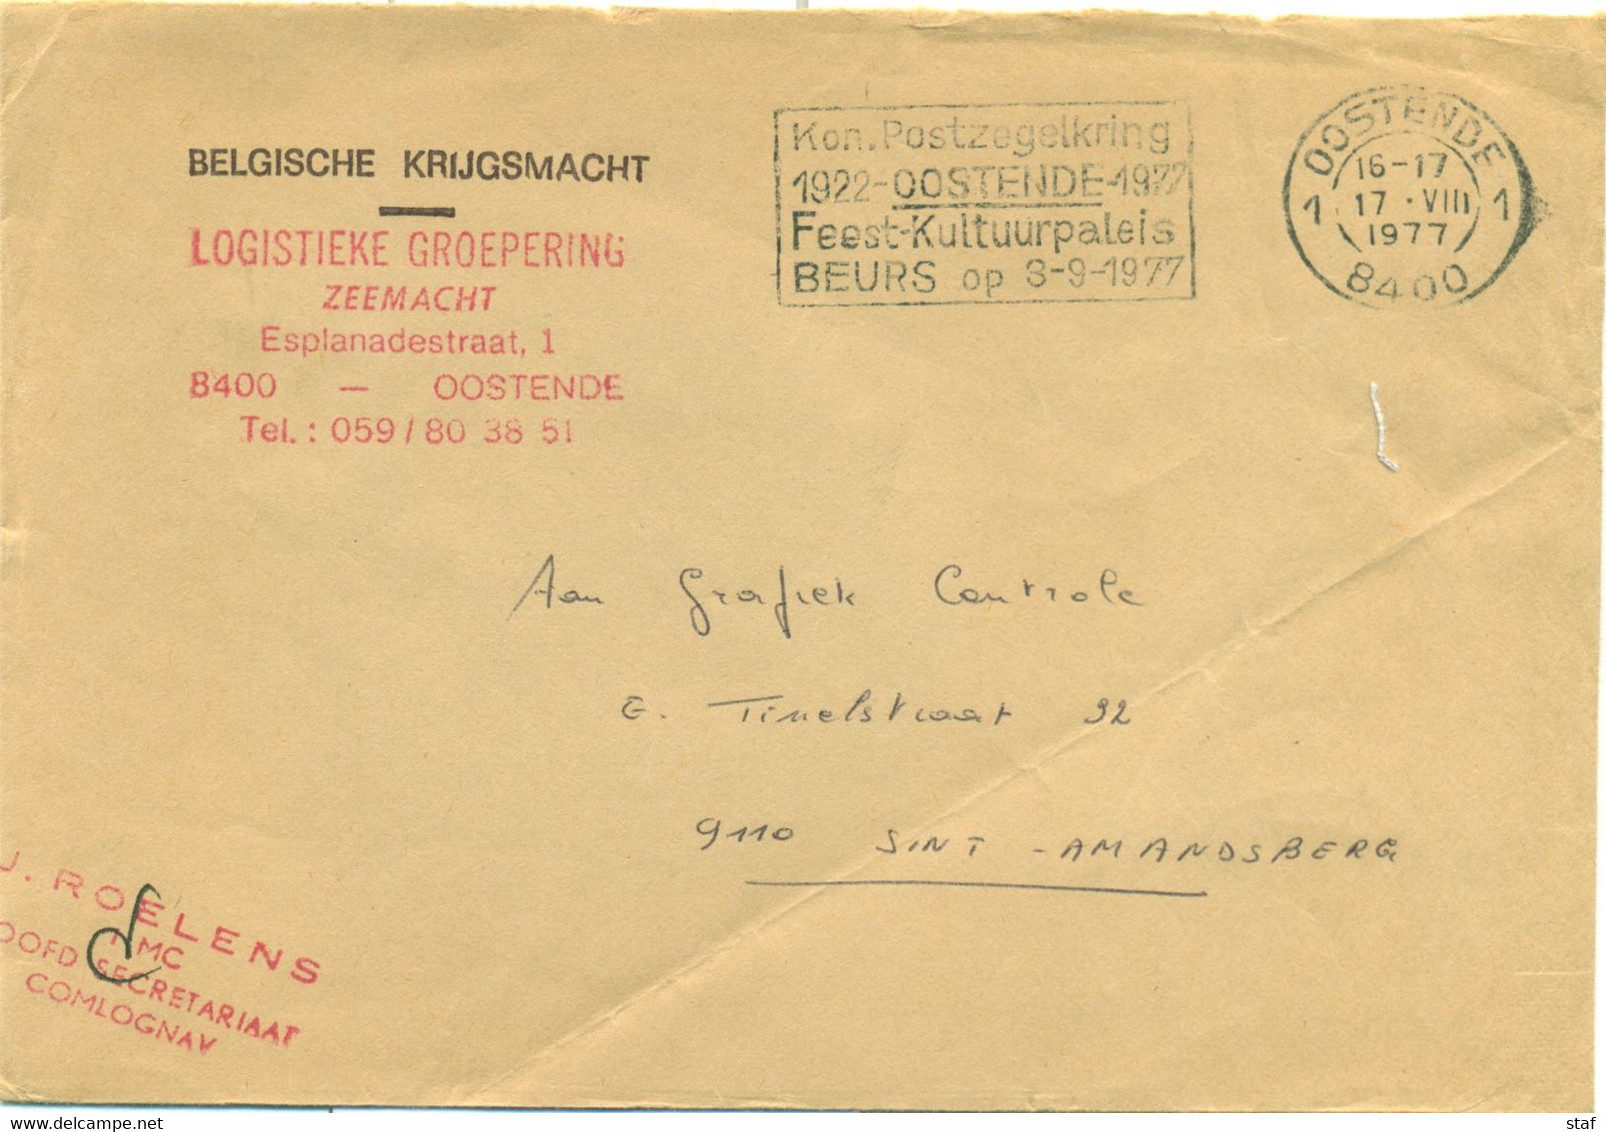 Kon. Postzegelkring Oostende 1922 - 1977 Feest-Kultuurpaleis Beurs Op 3-9-1977 - Werbestempel